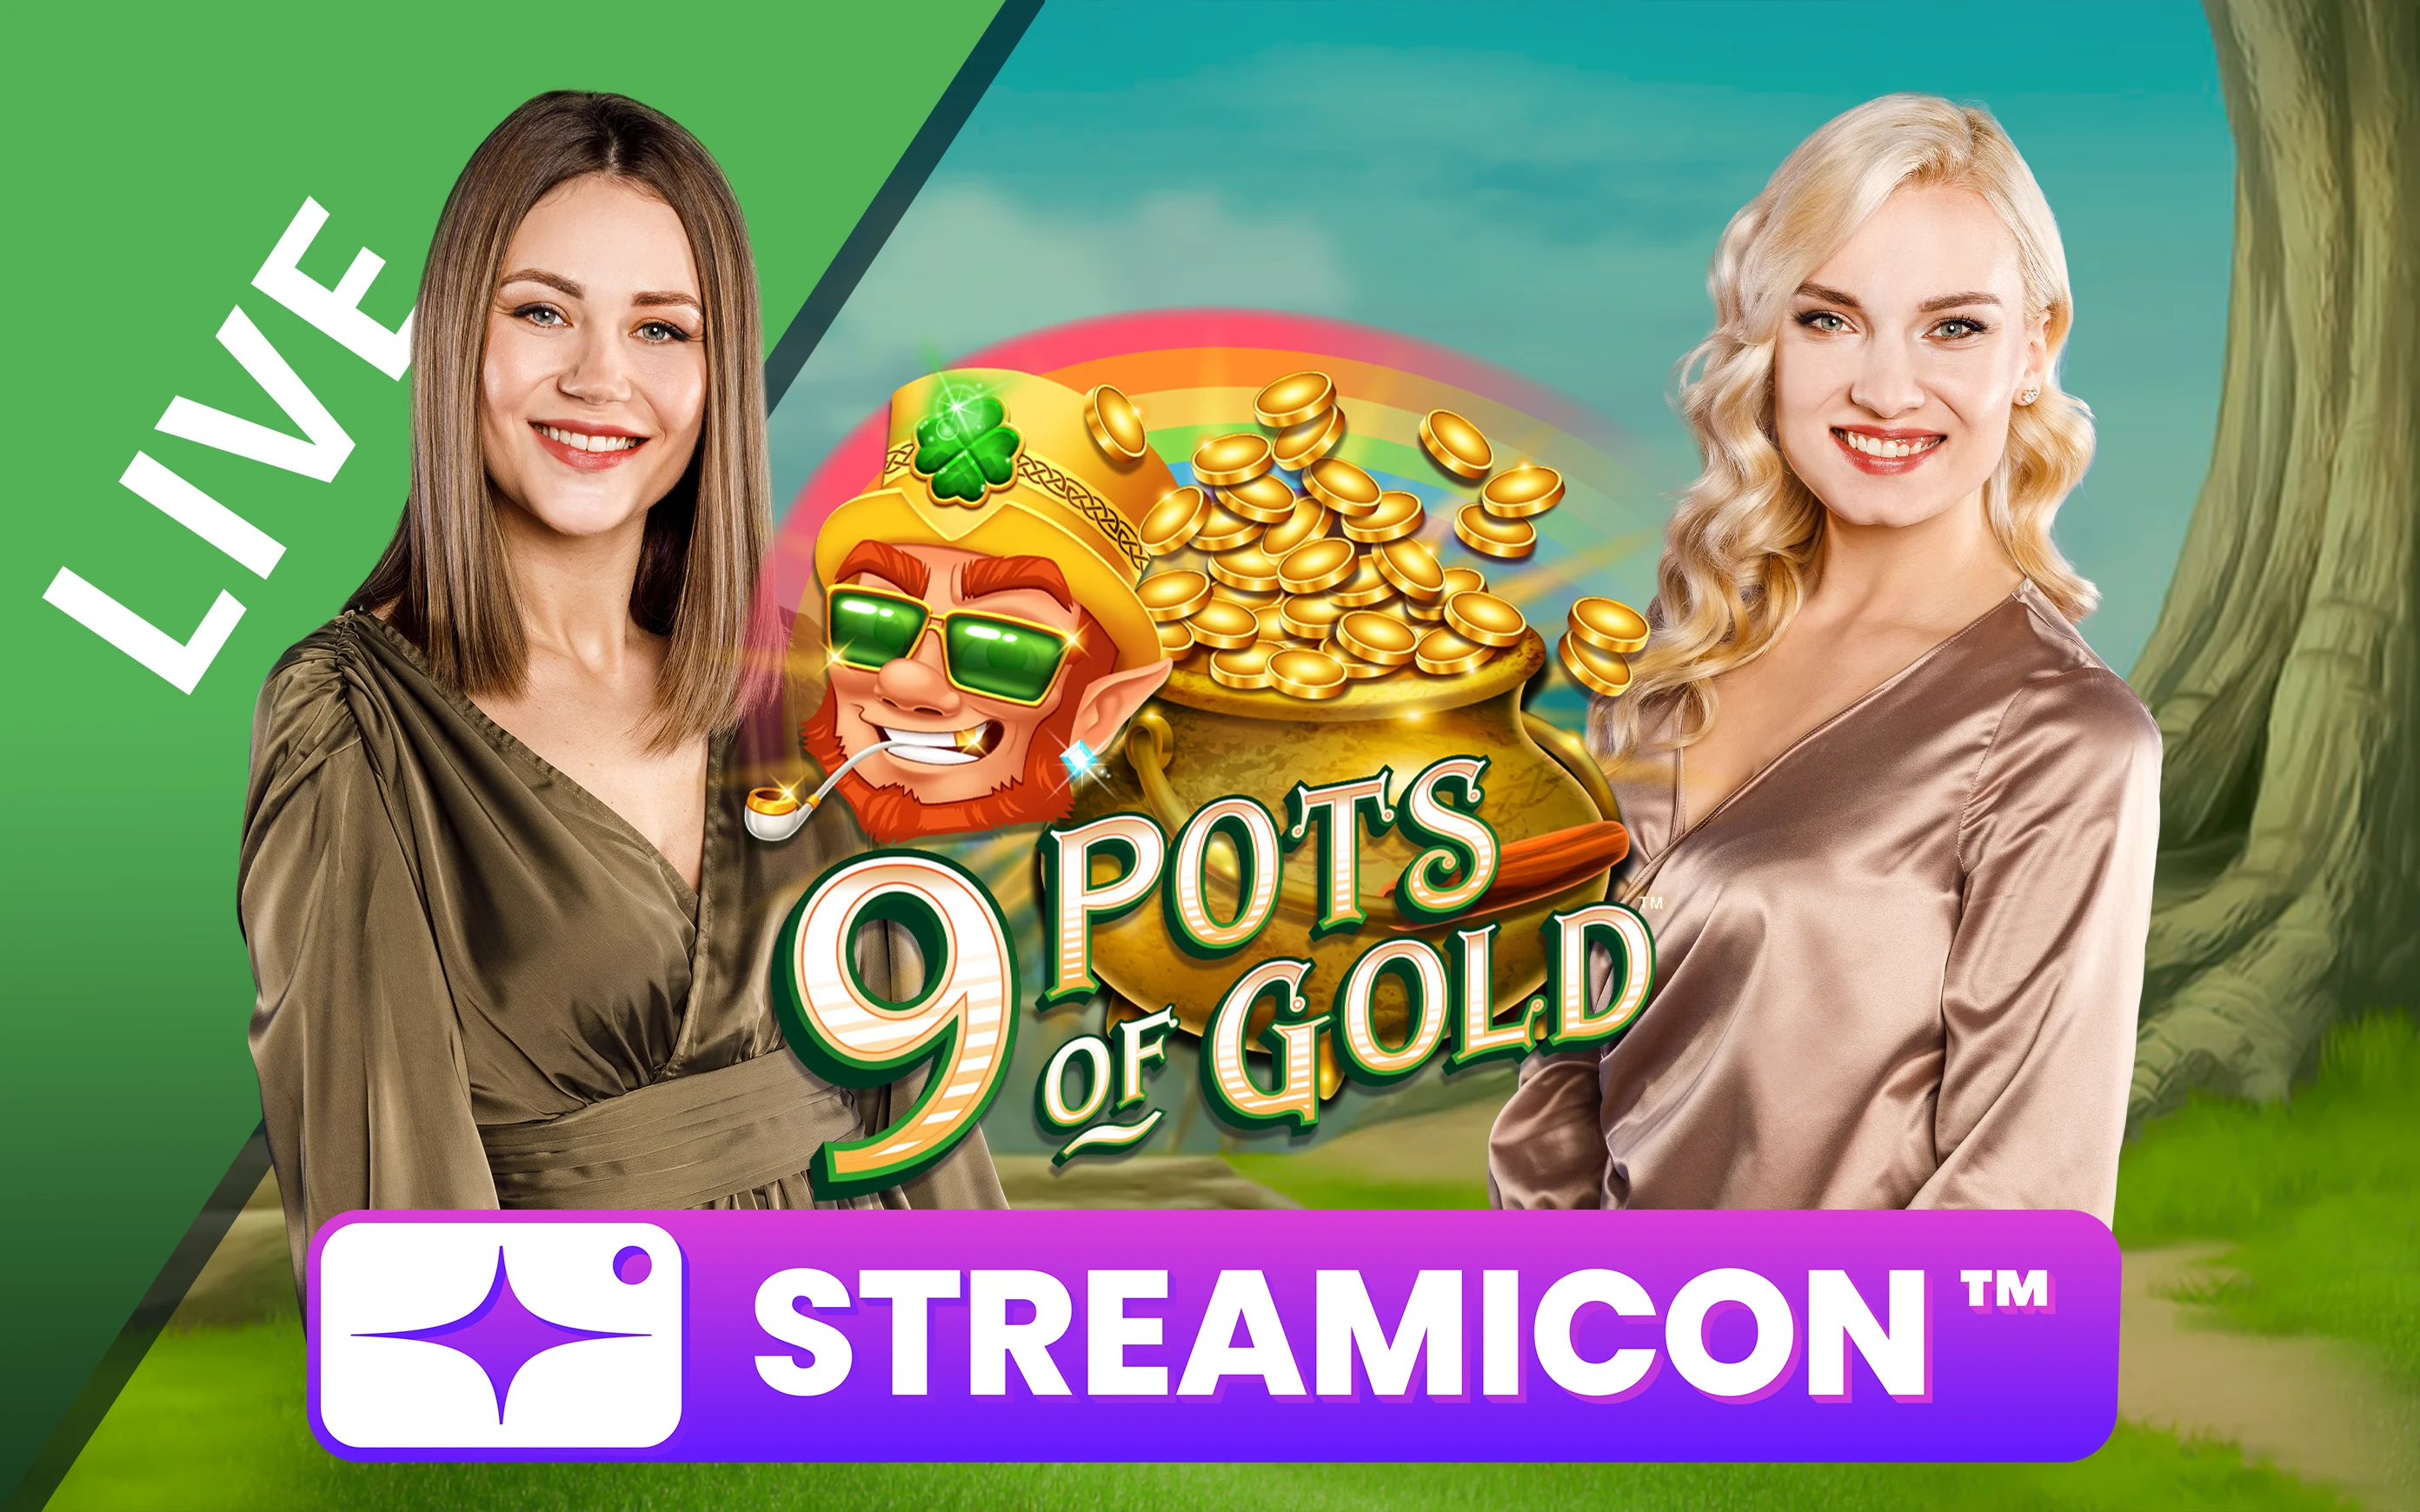 Spielen Sie 9 Pots of Gold™ Streamicon™ auf Starcasino.be-Online-Casino